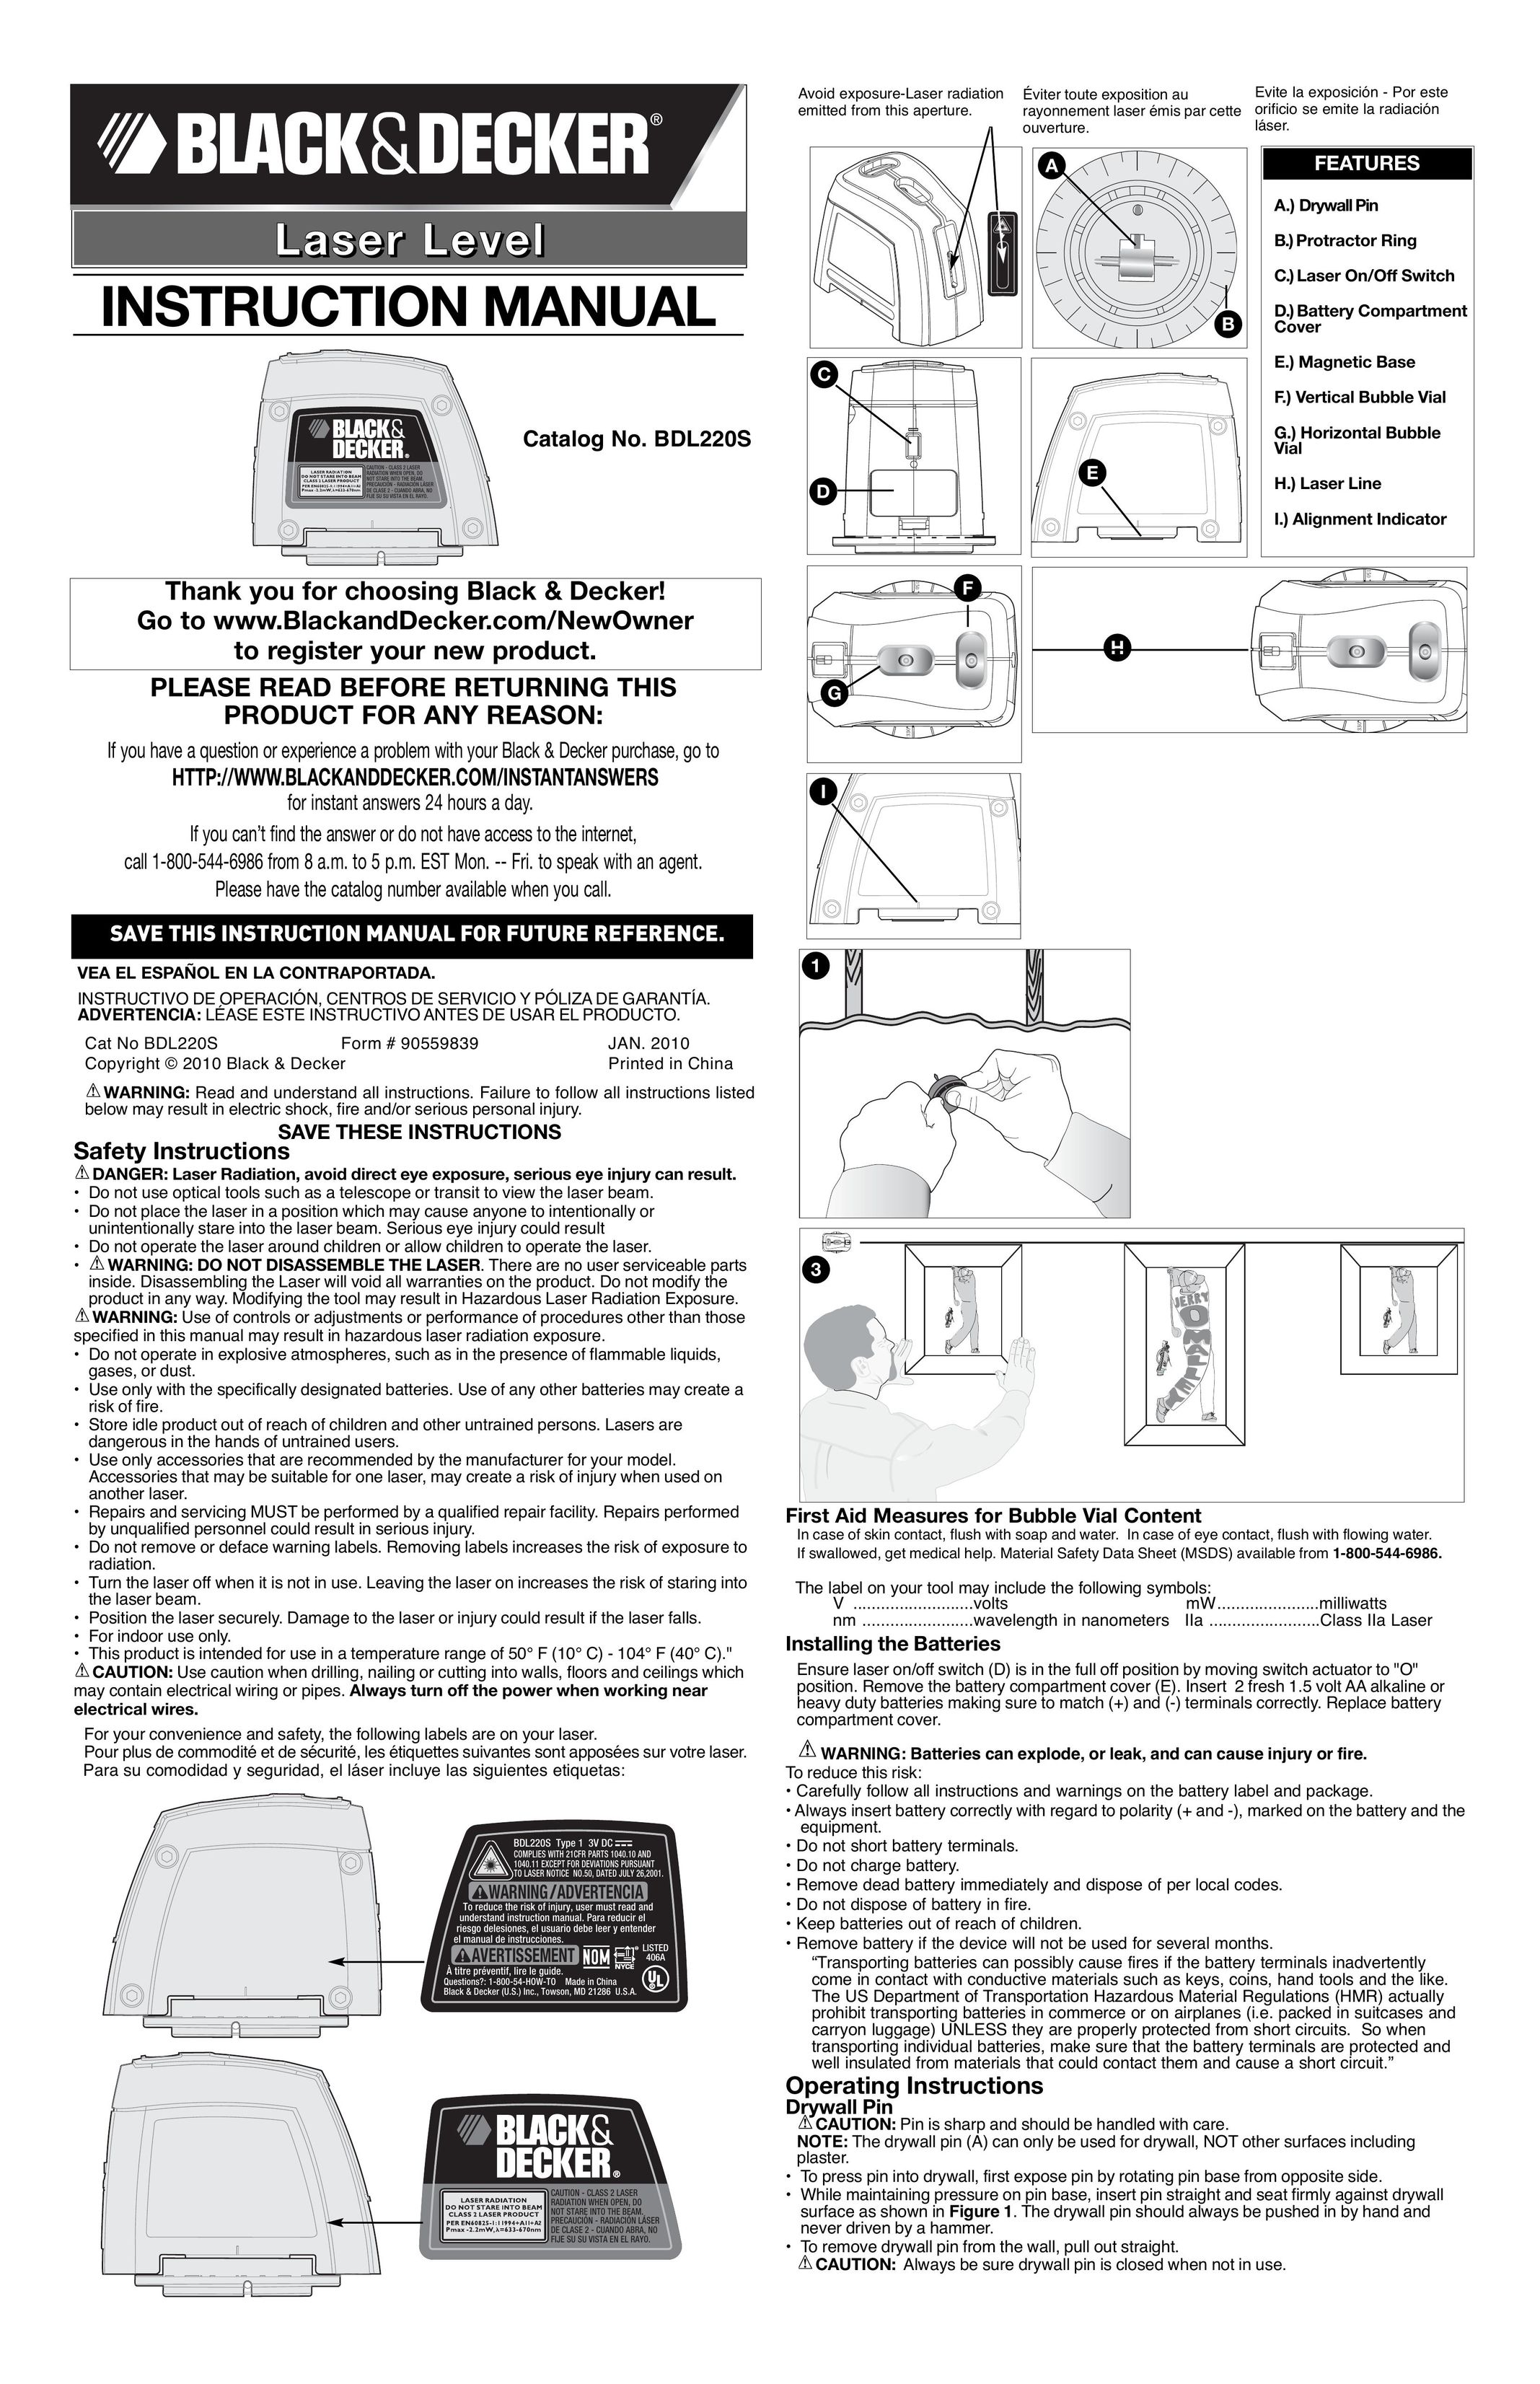 Black & Decker BDL220S Laser Level User Manual